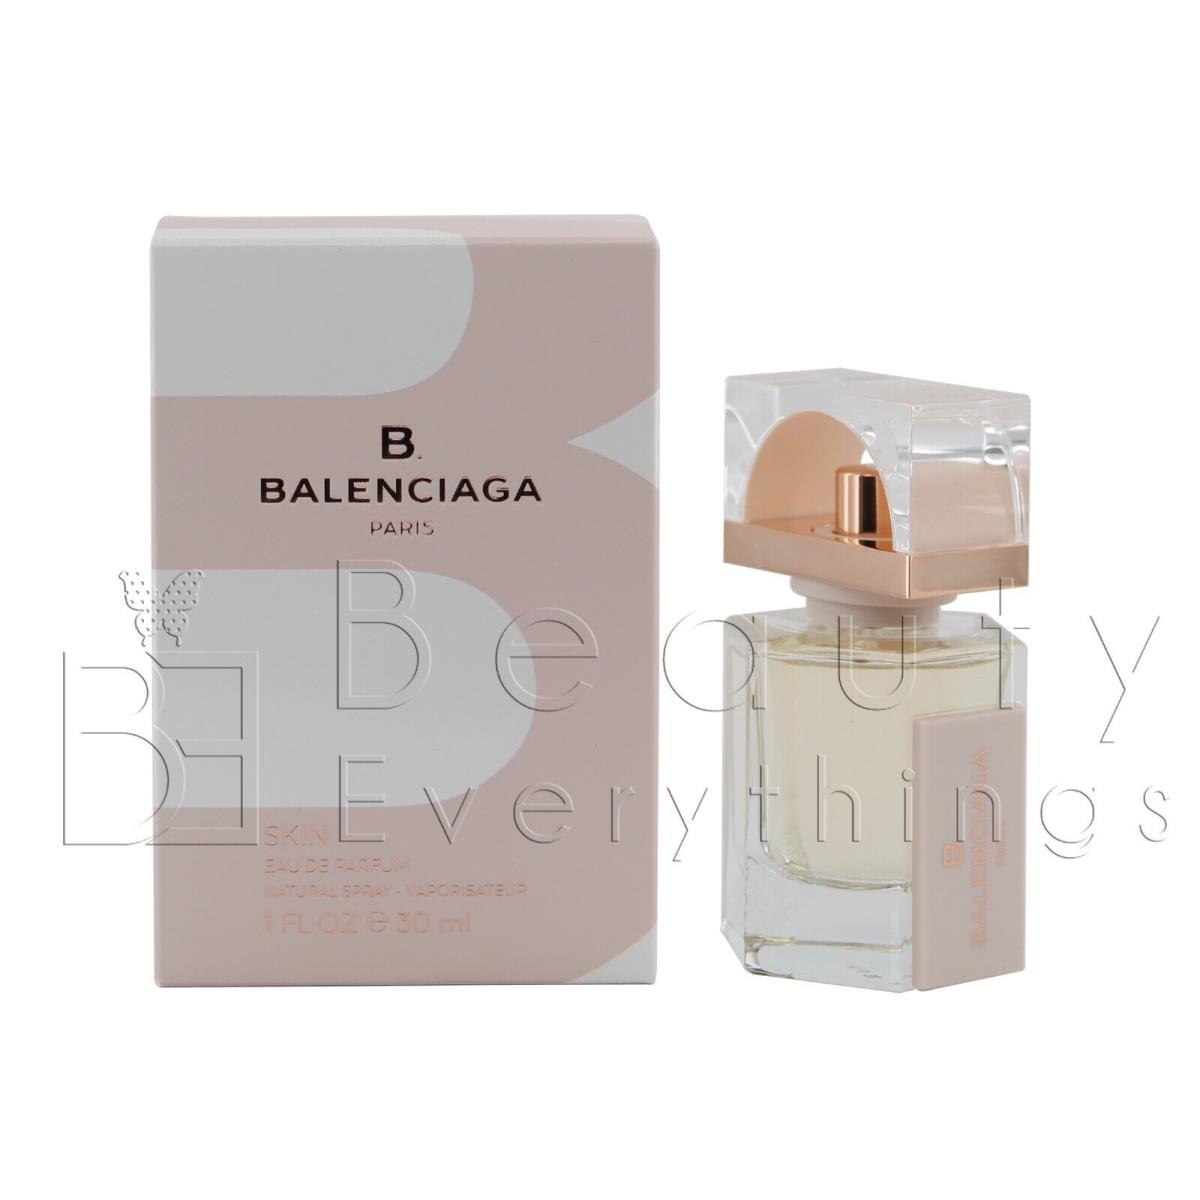 B Balenciaga Skin by Balenciaga 1oz / 30ml Edp Spray For Women